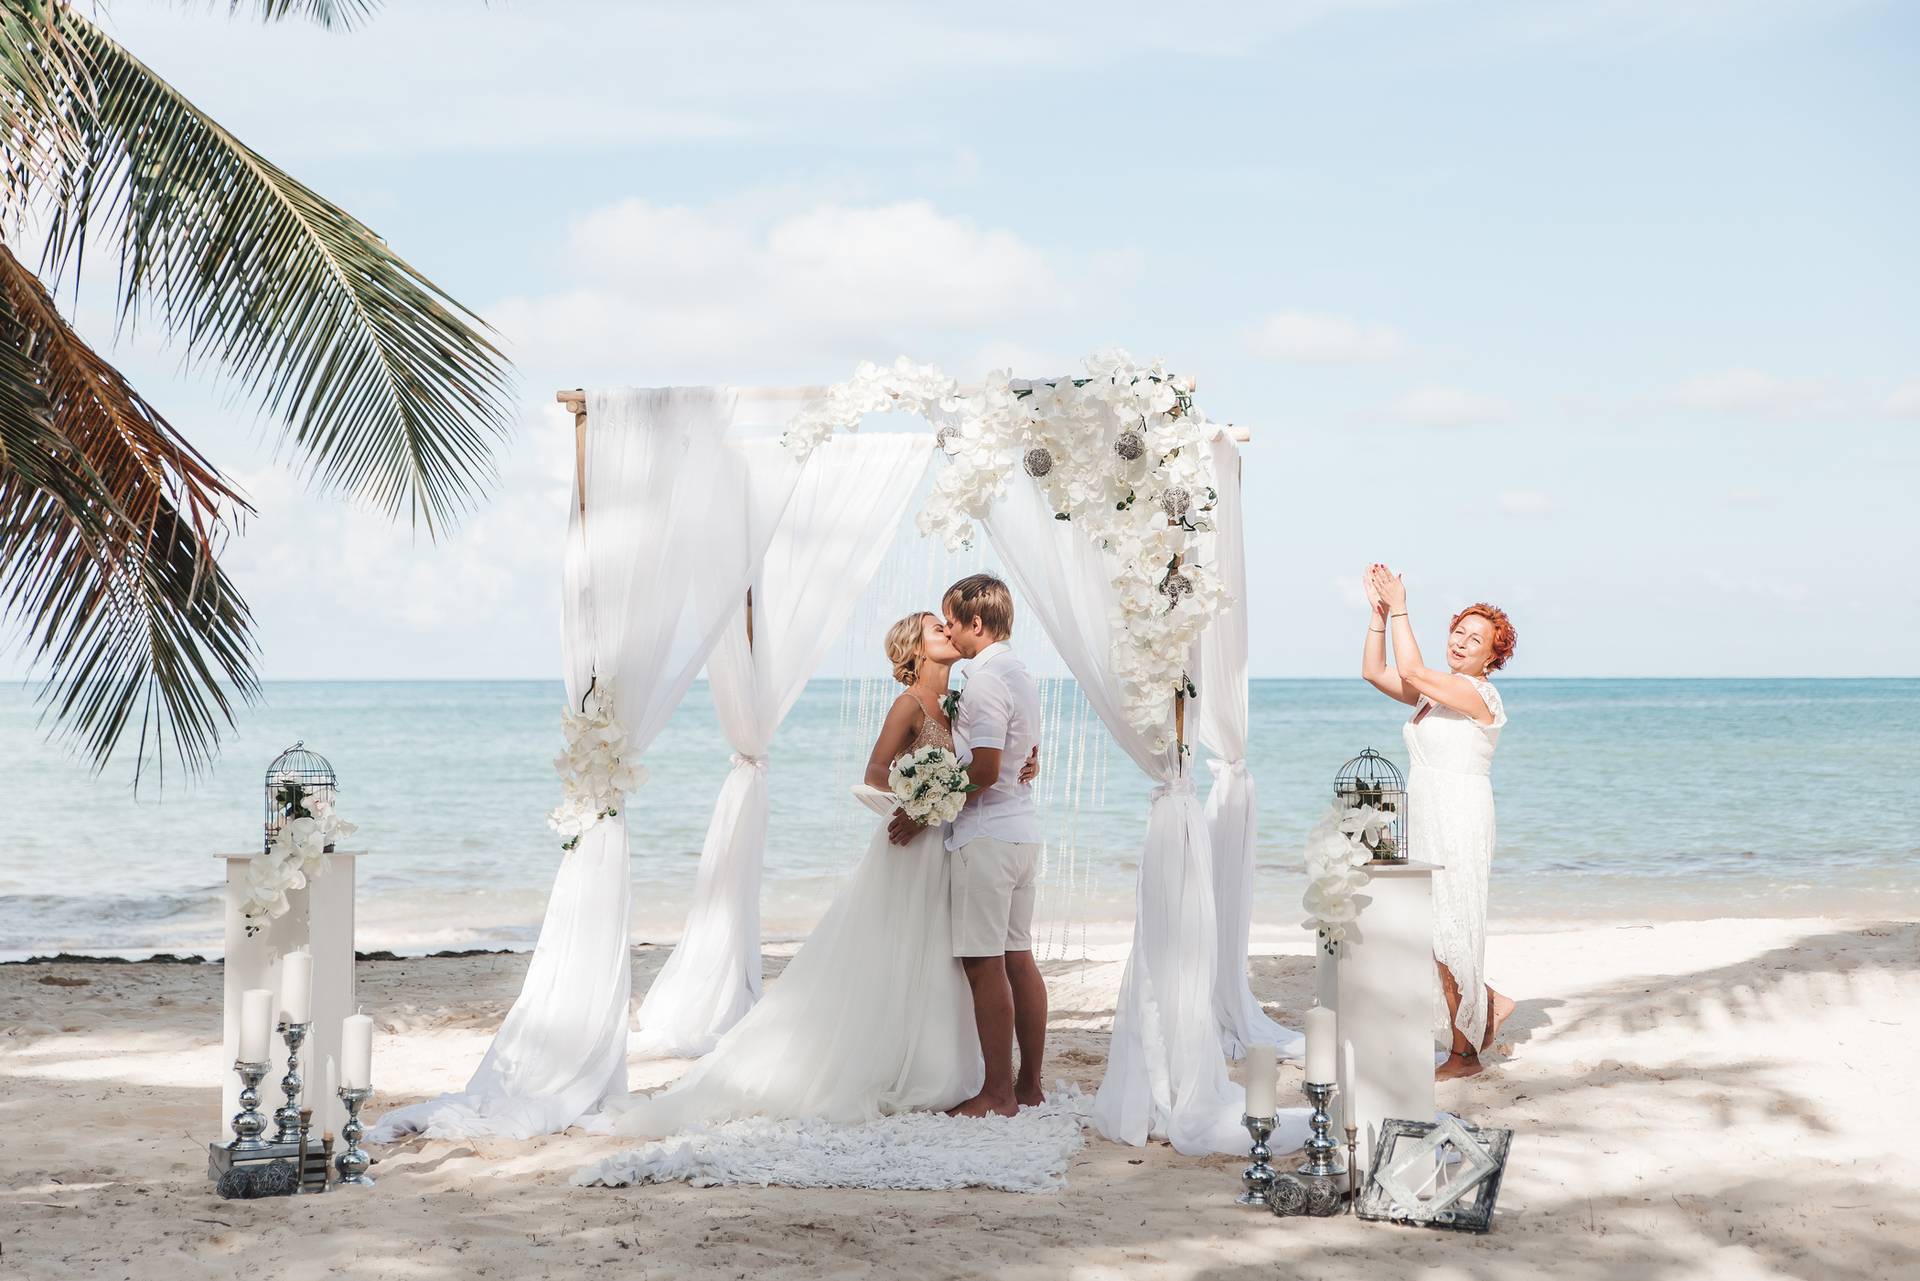 Свадебная фотосессия на море — как сделать красивые фото свадьбы на пляже?